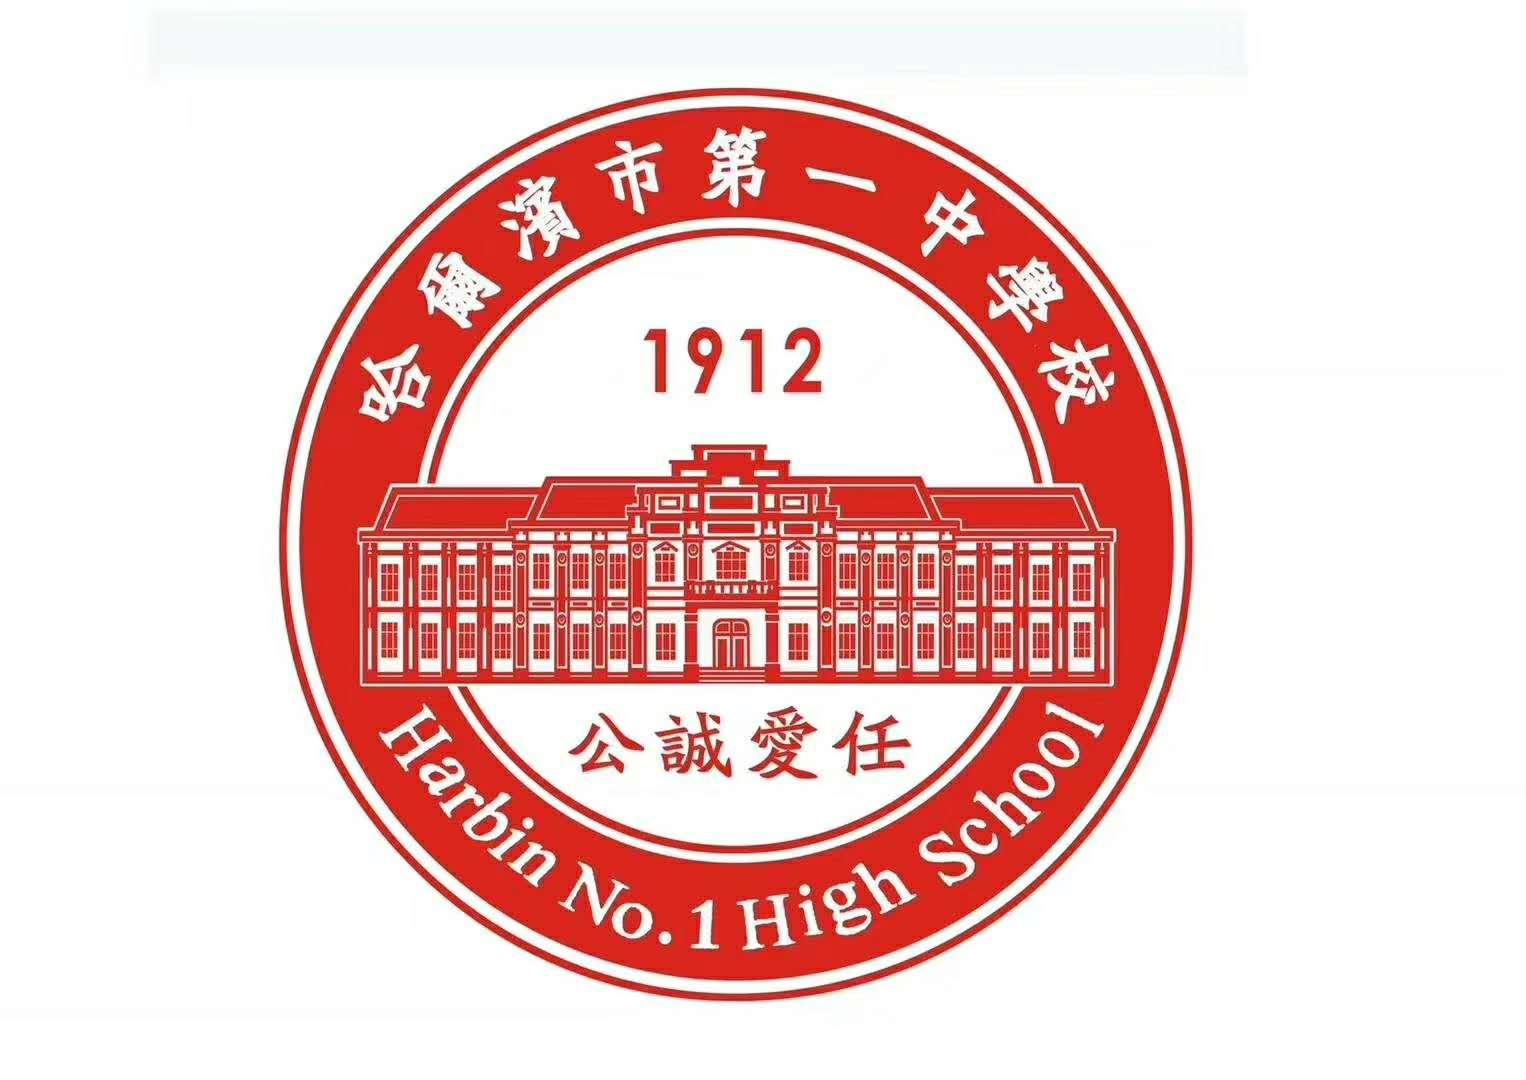 哈尔滨市第六中学校徽图片